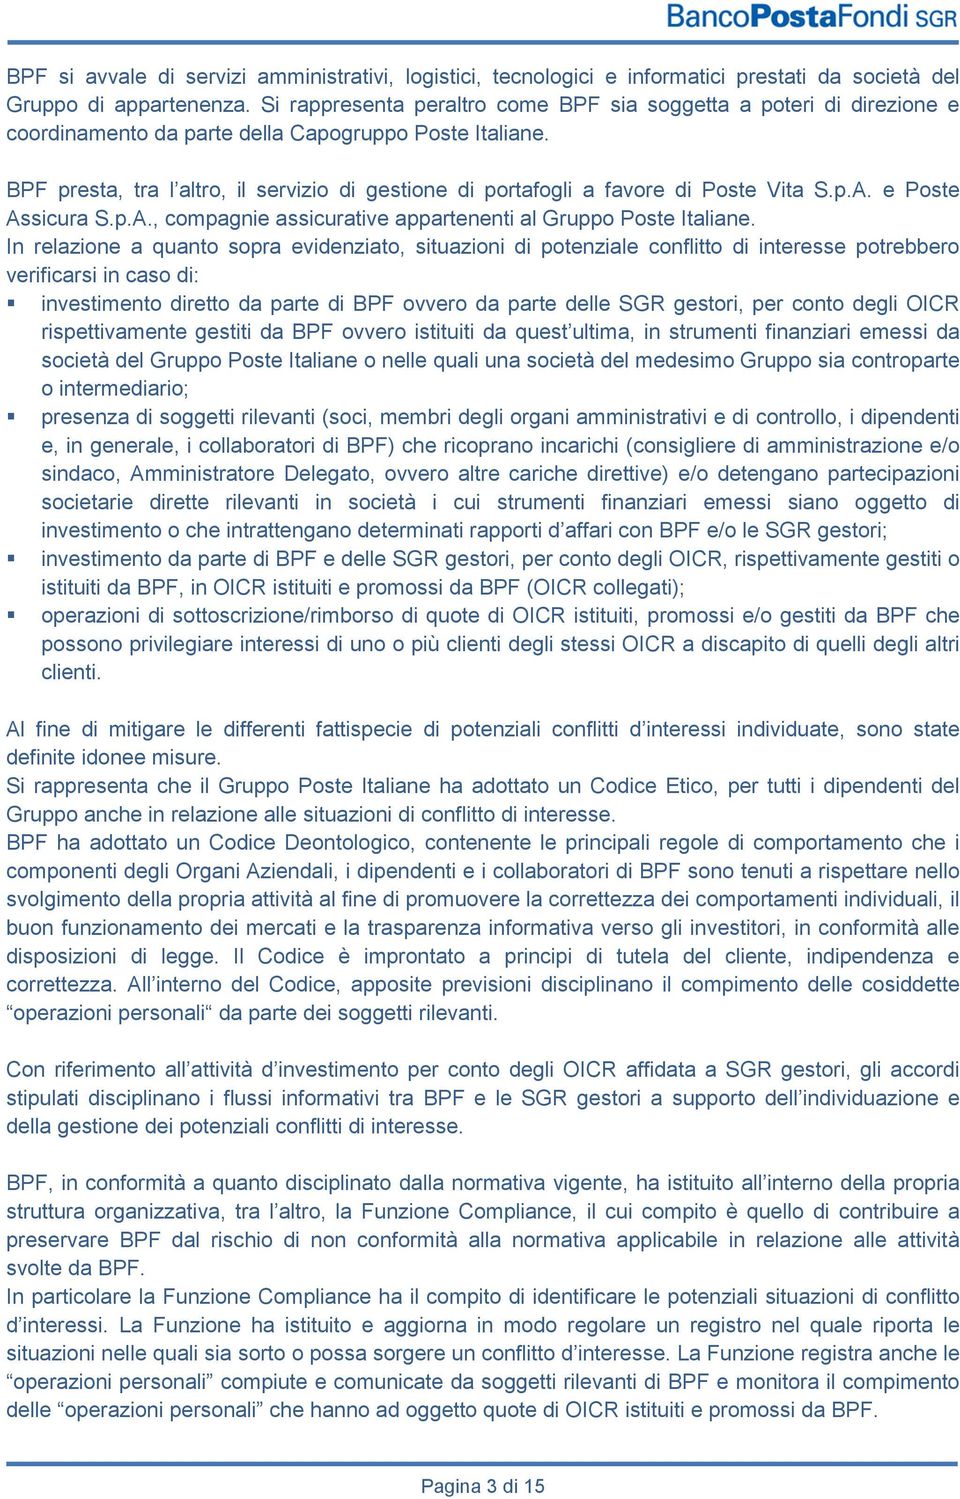 BPF presta, tra l altro, il servizio di gestione di portafogli a favore di Poste Vita S.p.A. e Poste Assicura S.p.A., compagnie assicurative appartenenti al Gruppo Poste Italiane.